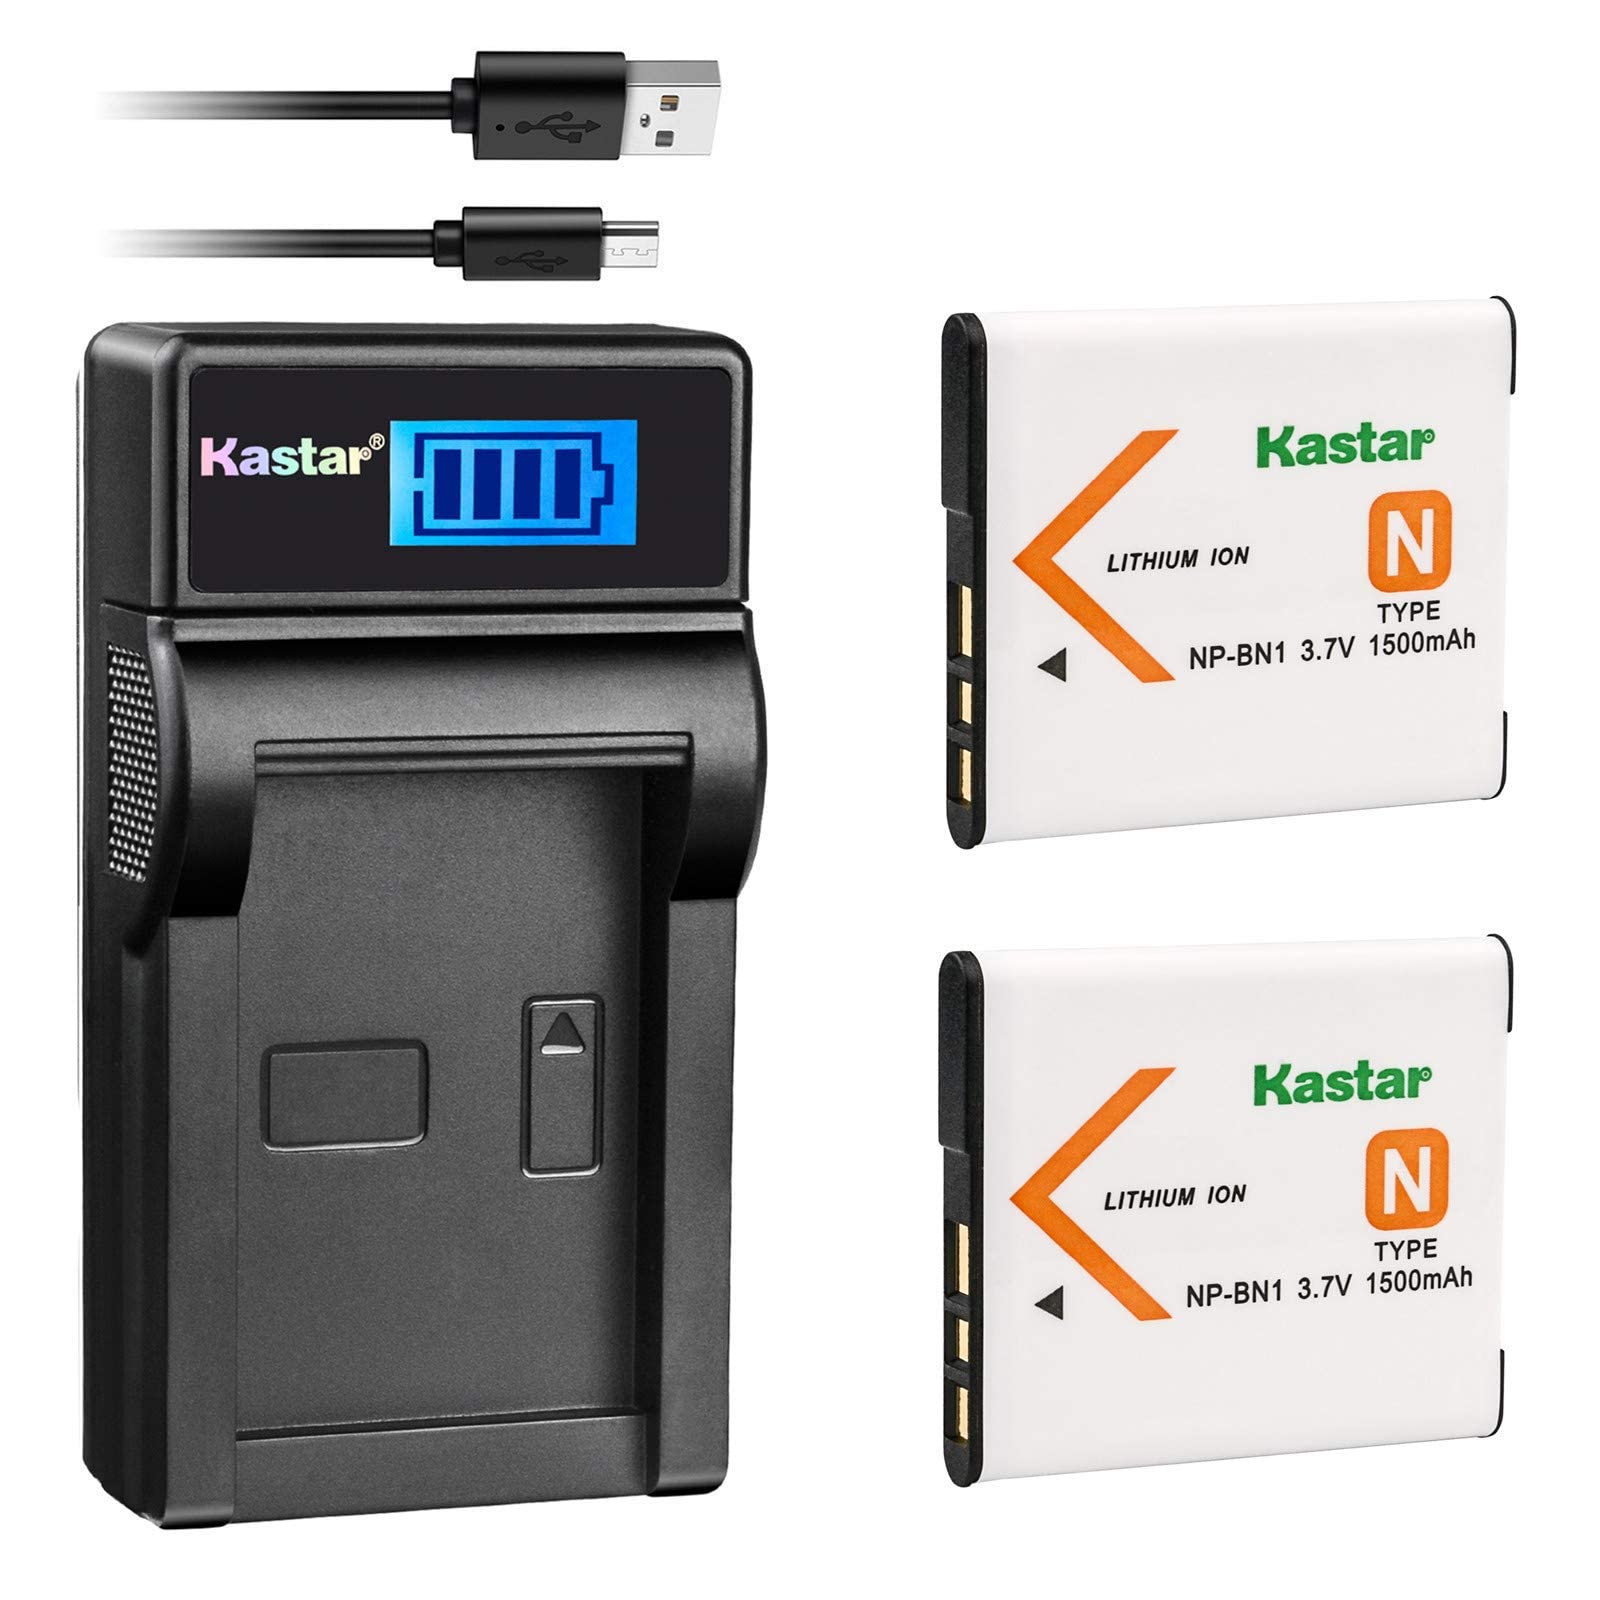 Mua Kastar Battery (X2) & LCD Slim USB Charger for Sony NP-BN1 NPBN1 BC-CSN  and Cyber-Shot DSC-QX10 QX30 QX100 DSC-TF1 DSC-TX10 TX20 TX30 DSC-W530 DSC-W570  DSC-W650 DSC-W800 DSC-W830 Digital Camera +More trên